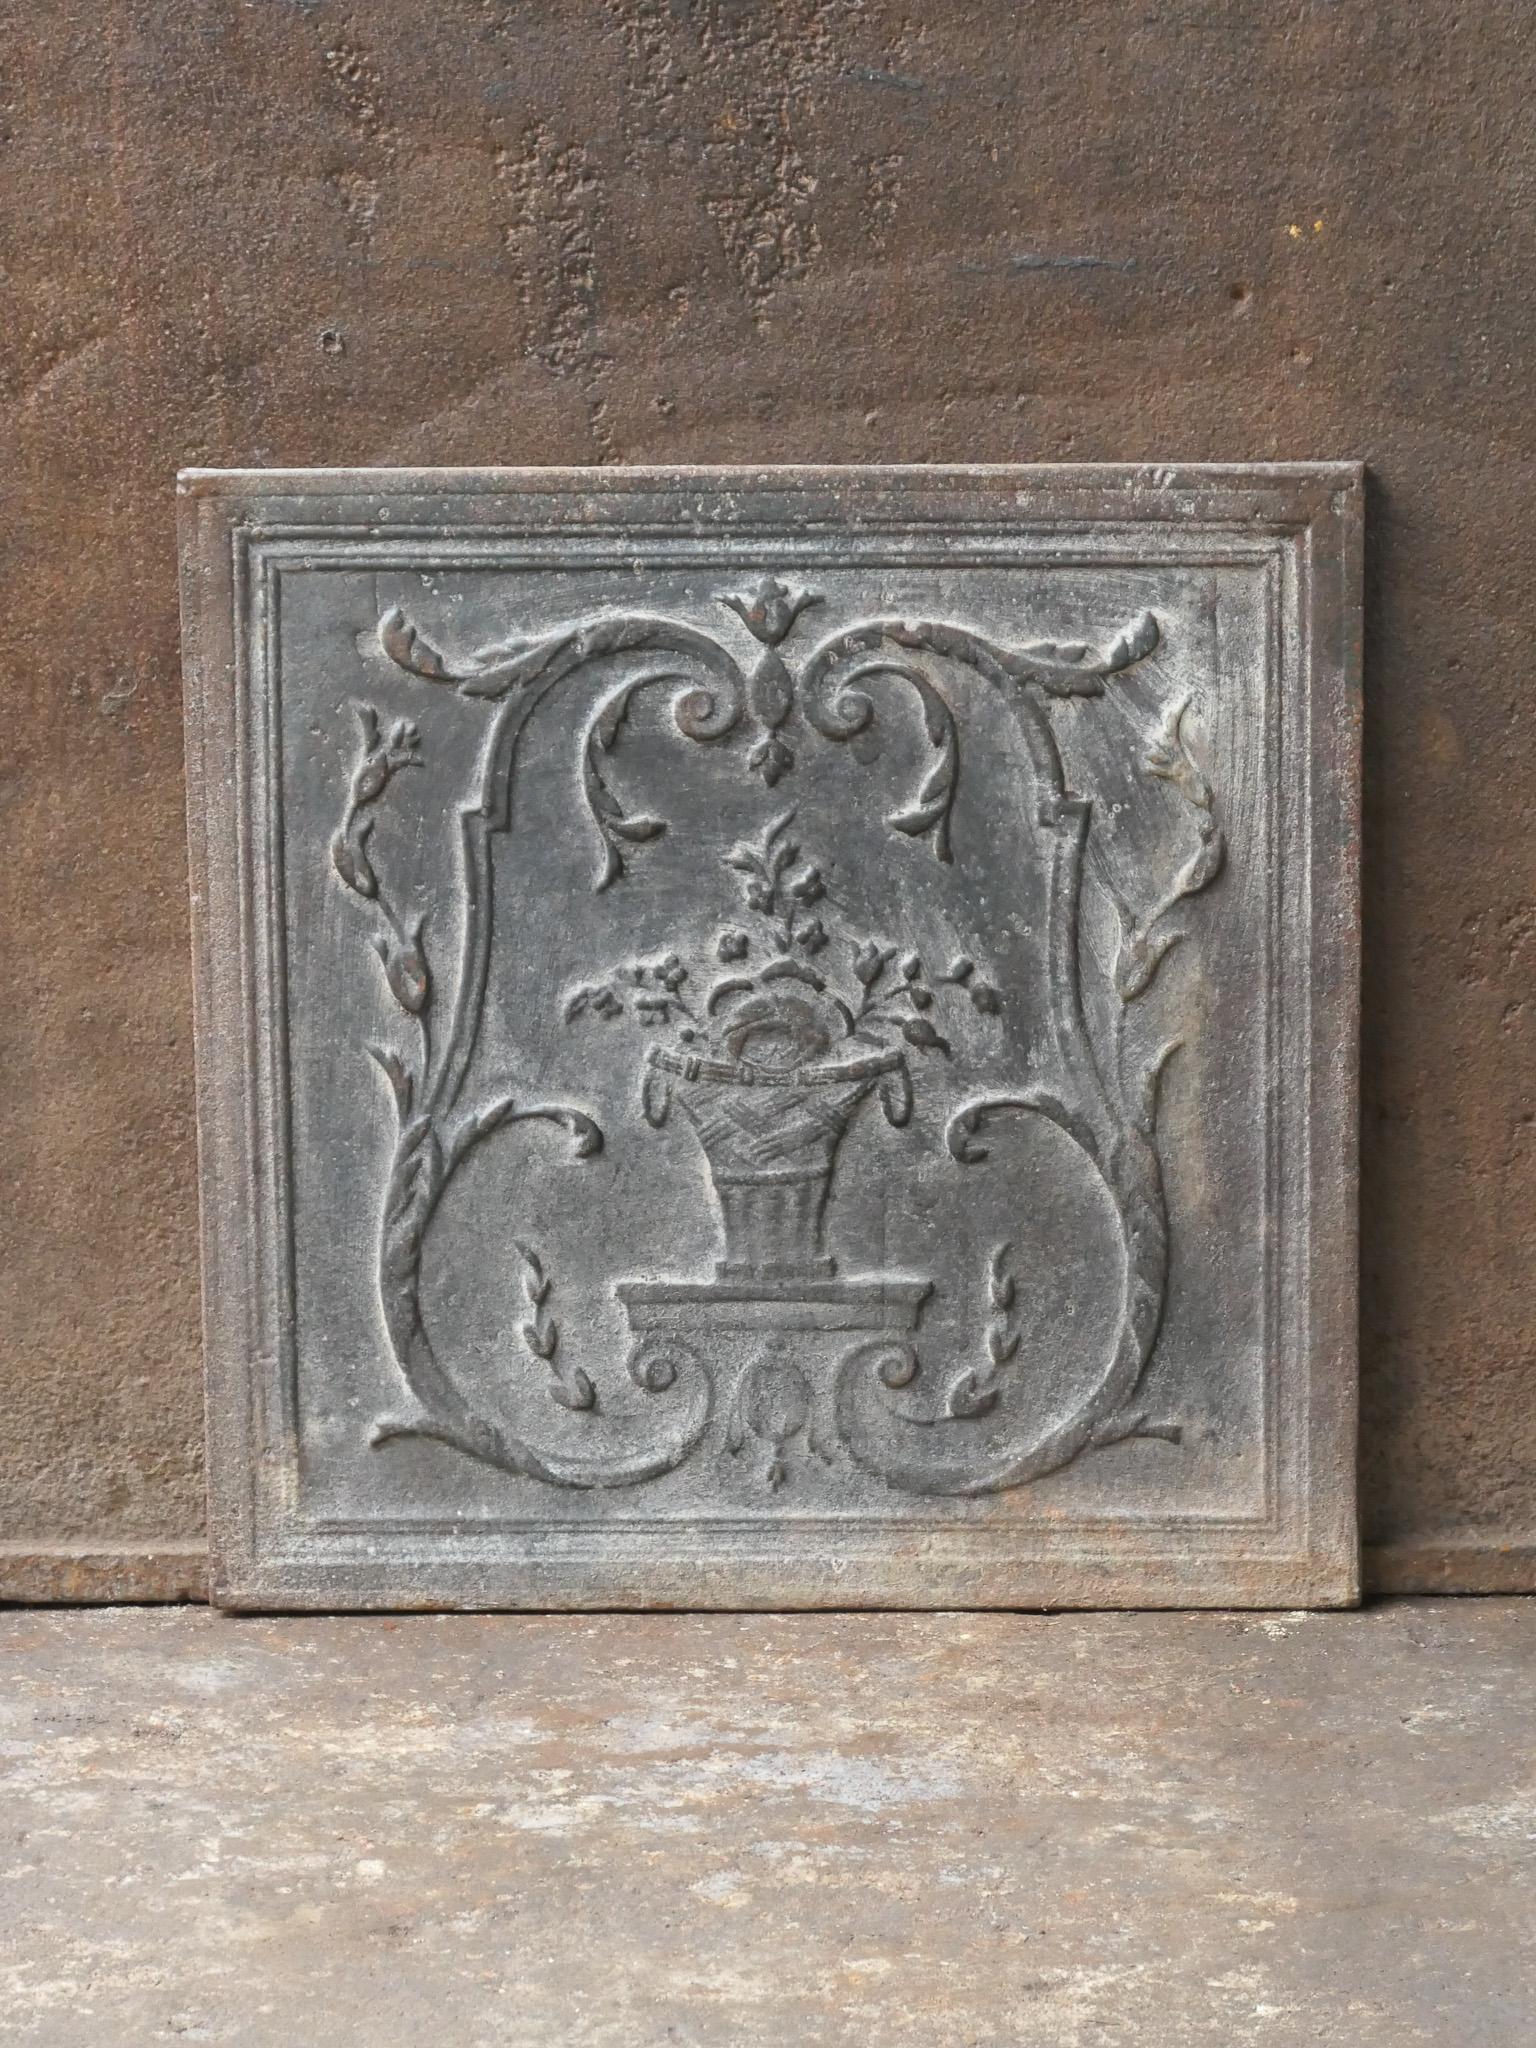 Neoklassizistischer französischer Kamin aus dem 18. bis 19. Jahrhundert mit einem Blumenkorb.

Die Feuerrückwand ist aus Gusseisen und hat eine natürliche braune Patina. Auf Anfrage kann er auch in schwarz/zinnfarbener Ausführung geliefert werden.